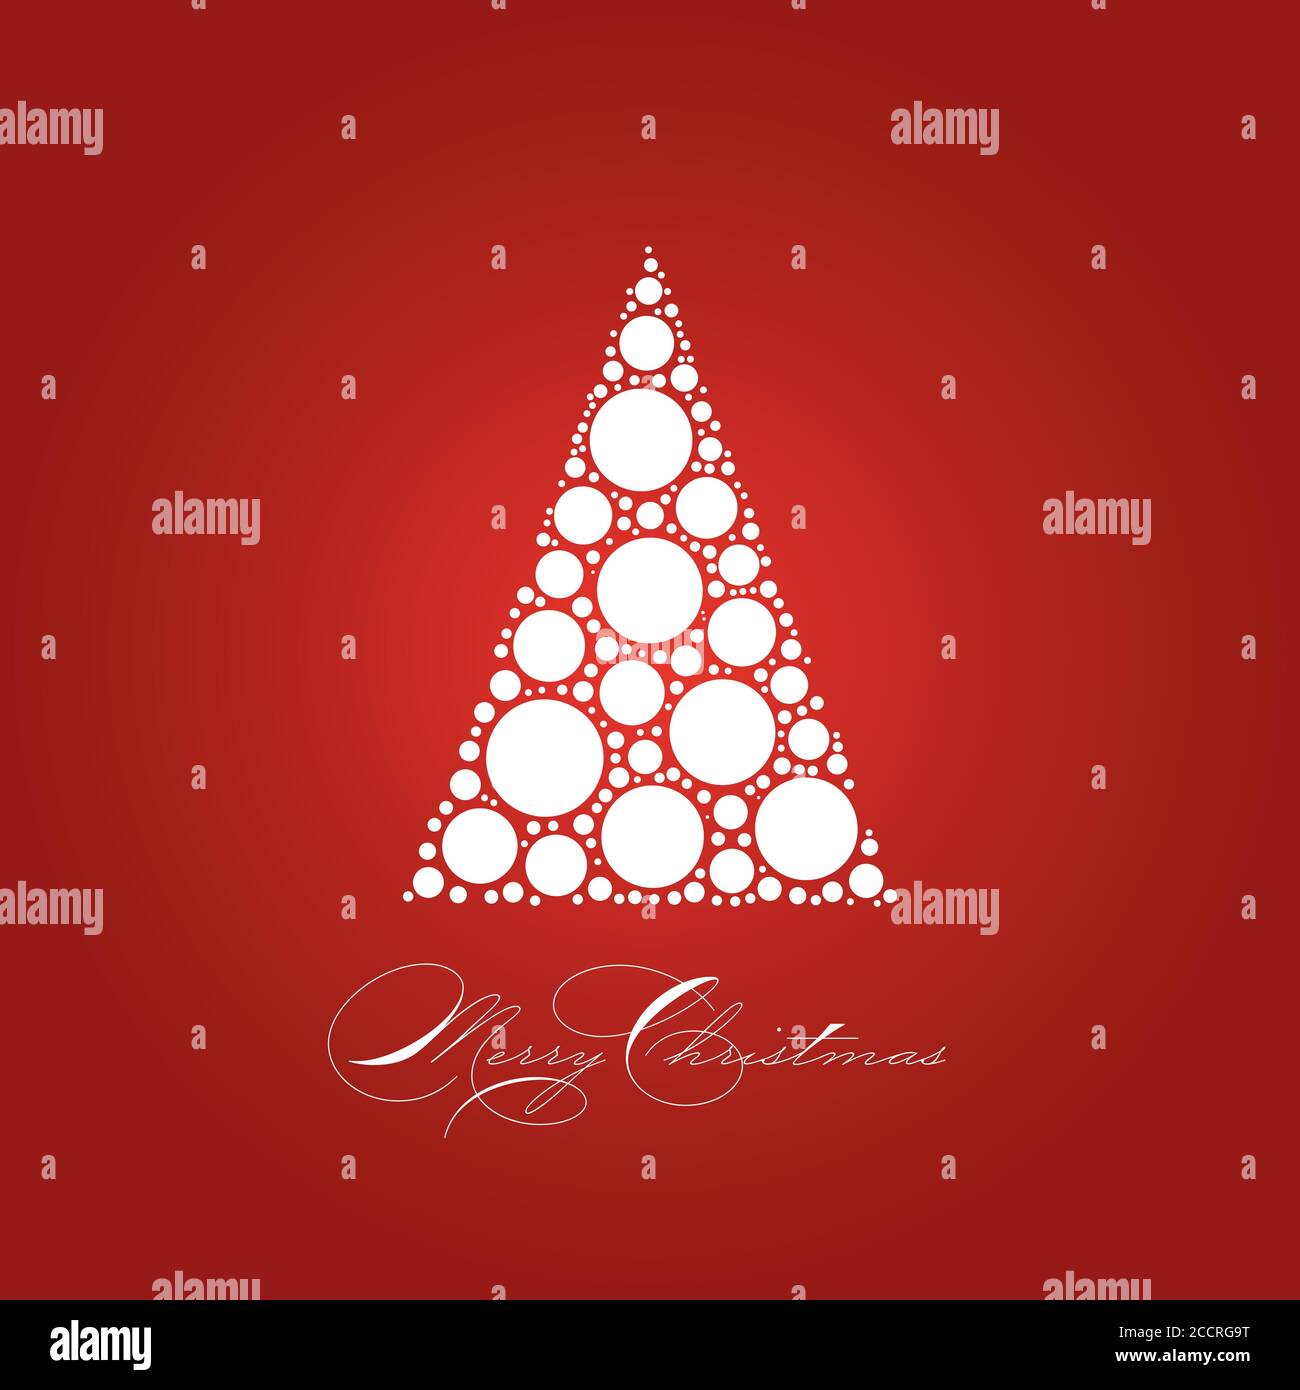 Weihnachtskarte Thema mit gepunkteten schneeweißen Weihnachtsbaum auf rotem Hintergrund und Label Merry Christmas. Einfache elegante und moderne Vectrior Illustration. Stock Vektor